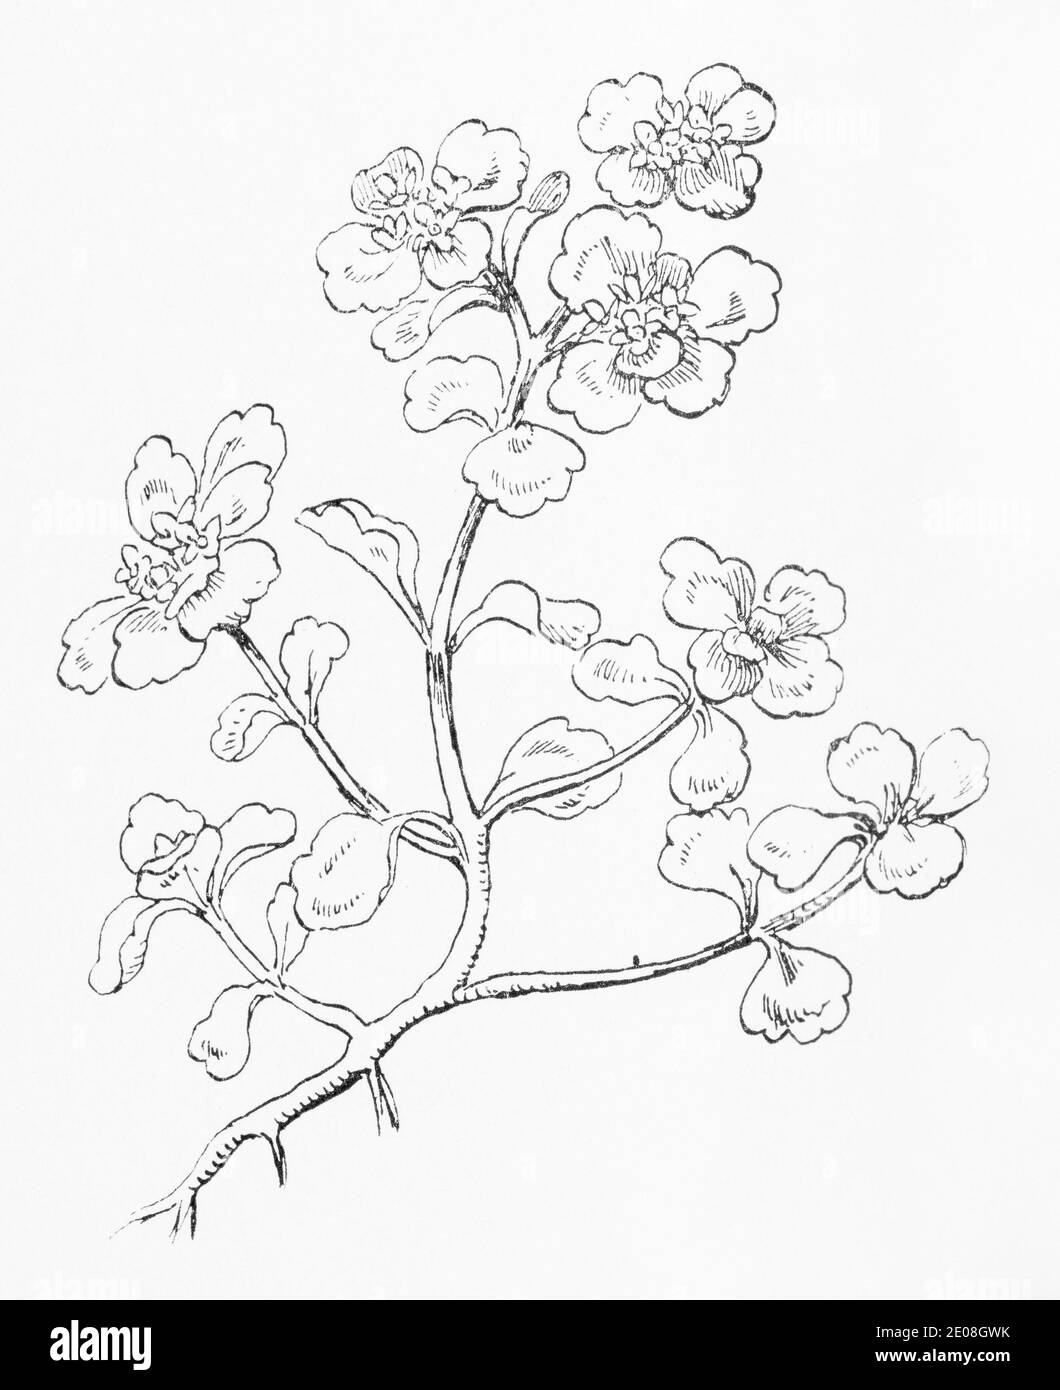 Ancienne gravure d'illustration botanique de saxifrage doré à feuilles opposées / Chrysosplenium oppositifolium. Voir Remarques Banque D'Images